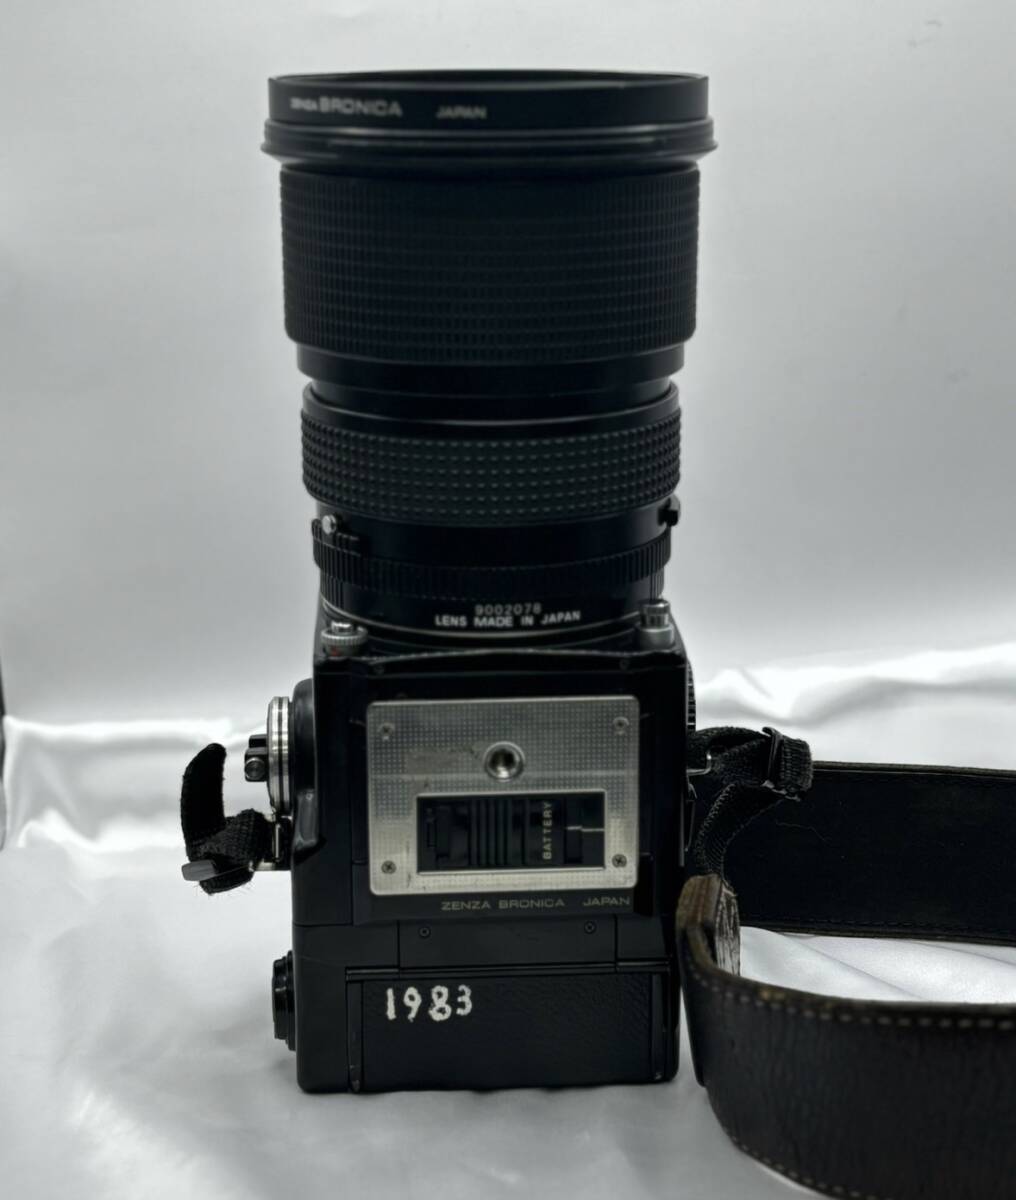 １円スタート ZENZA BRONICA ETR-C + ZENZANON-PE 45-90mm F4-5.6 ASPHERICALなど カメラ レンズの画像8